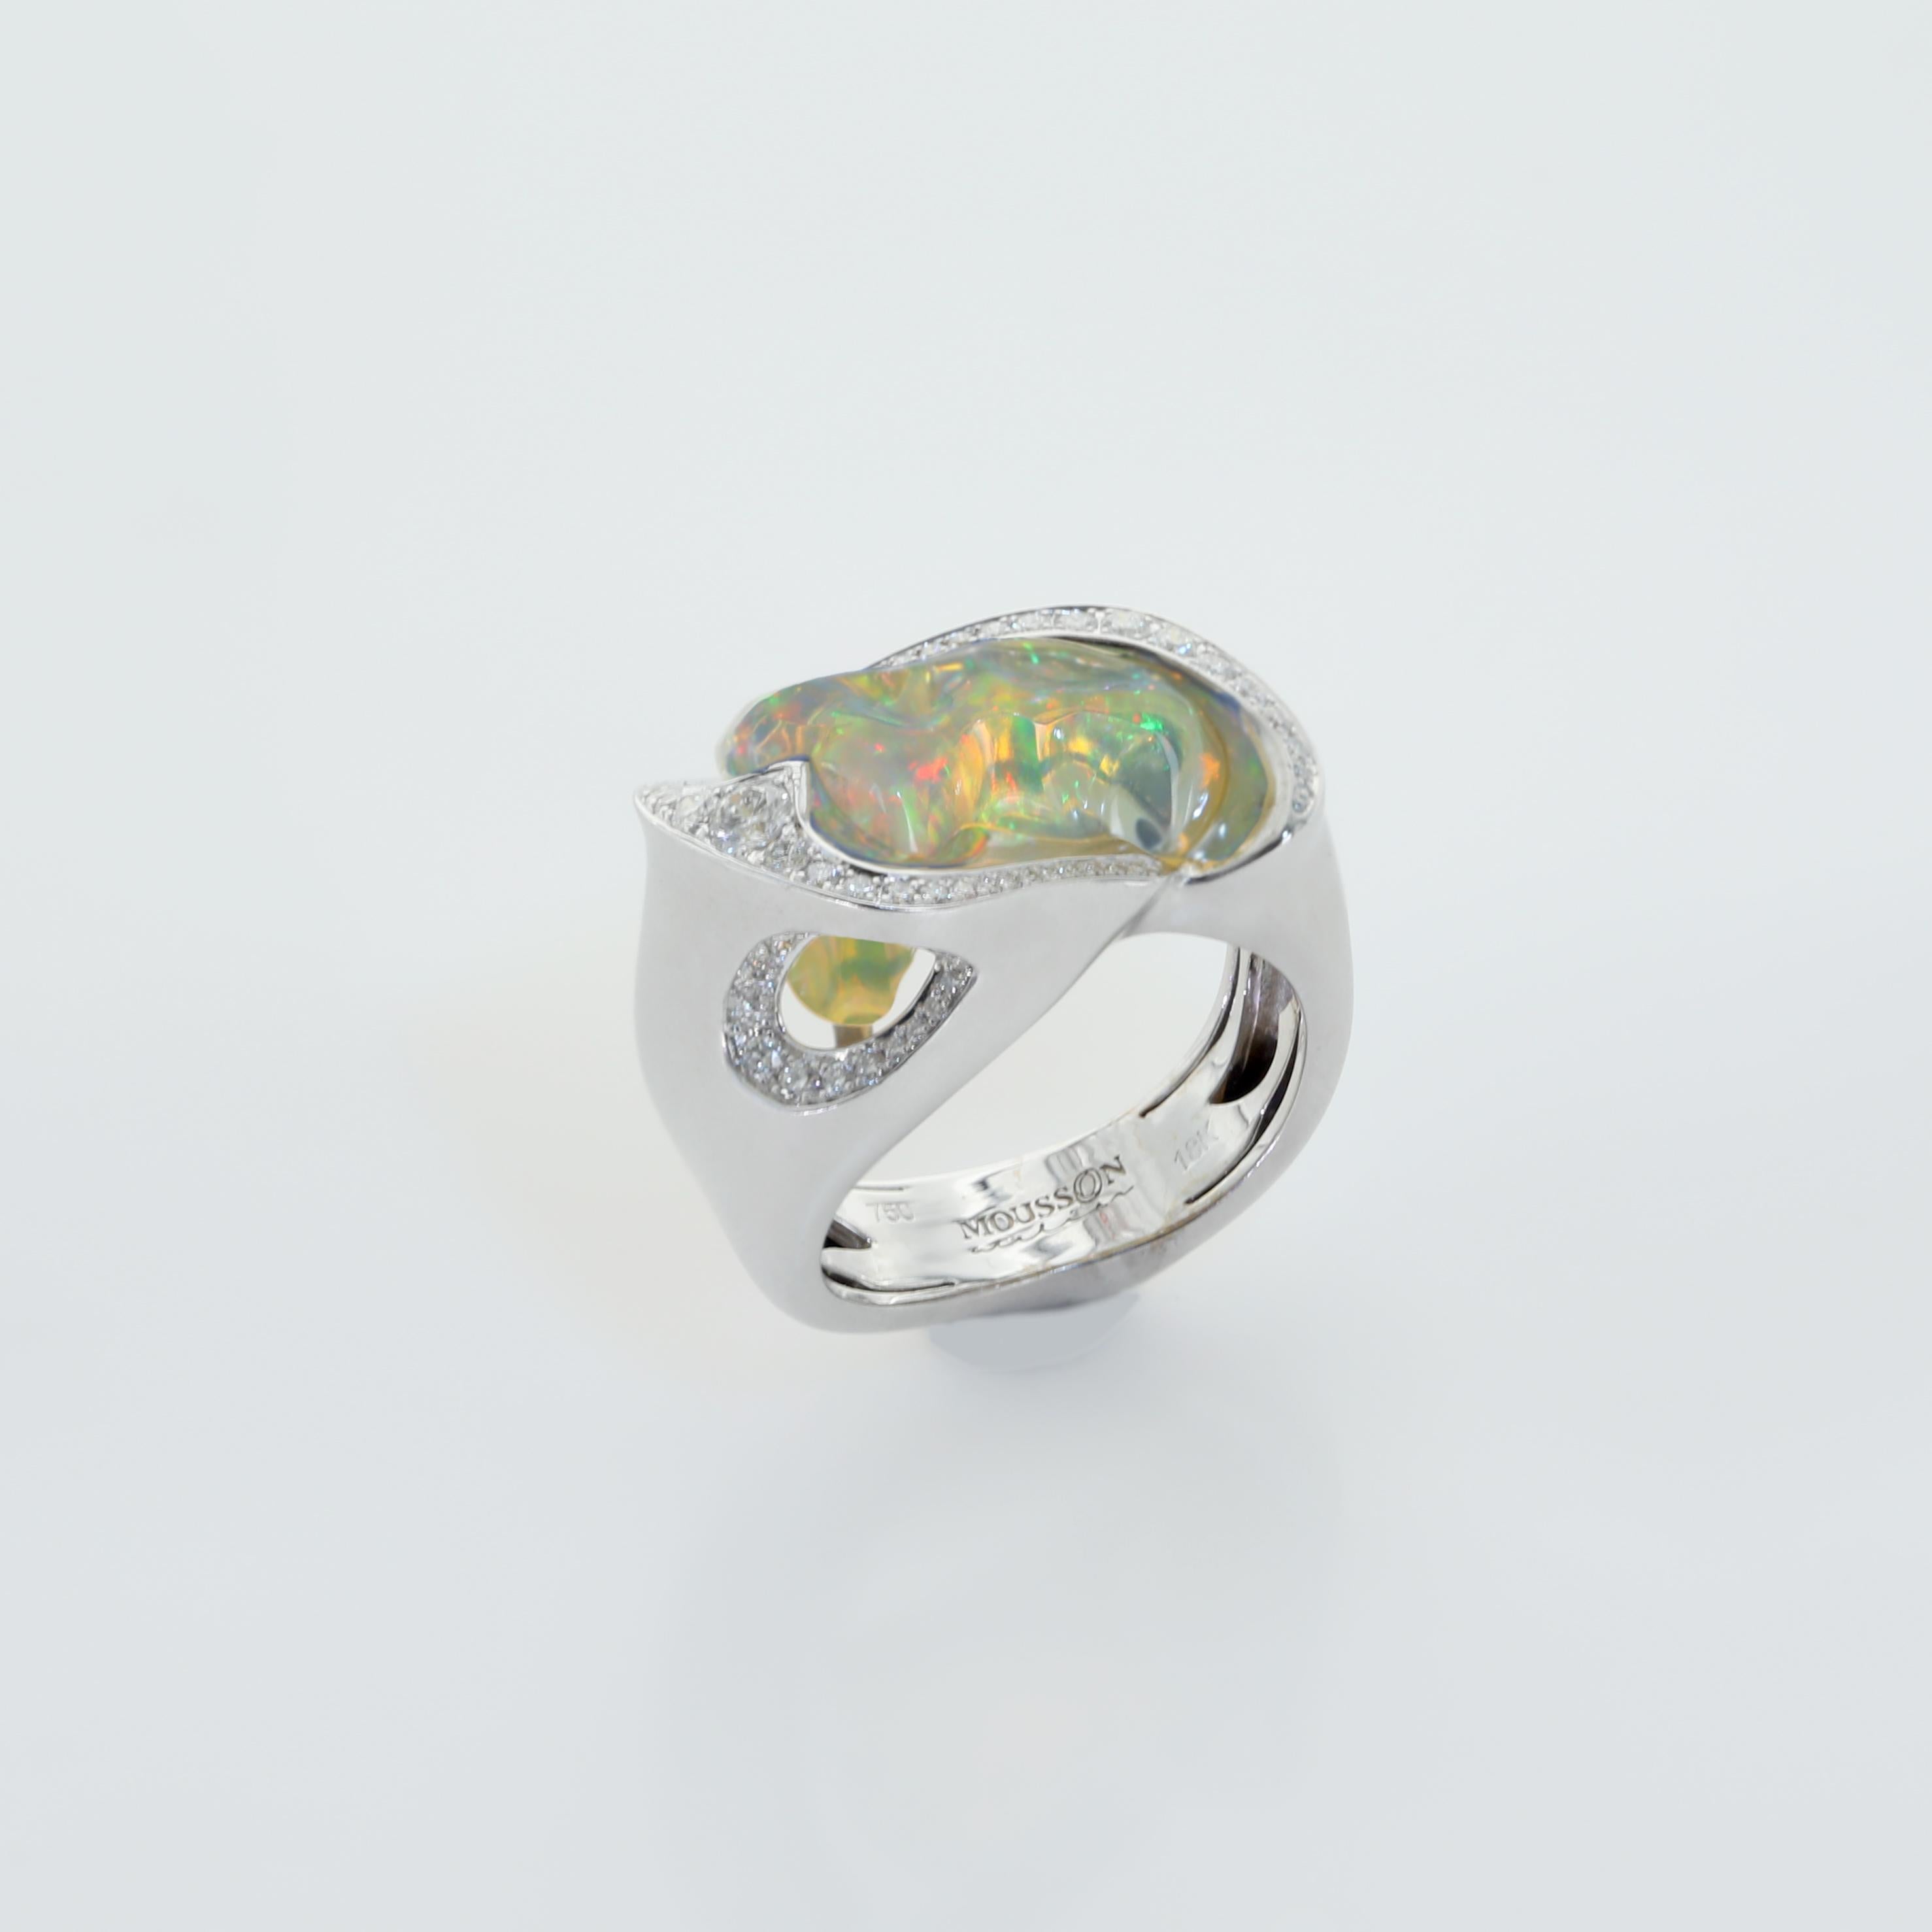 Die freie Form des mexikanischen Opals macht diesen Ring zu einem Unikat. Diamanten sind das Spiel der Farben unterstützt. 18 Karat Weißgold Ring
Begleitet von Ohrringen LU116414707821 

US Größe 7 3/4
EU Größe 55 7/8

23x14,5x32,6 mm
10.93 gm